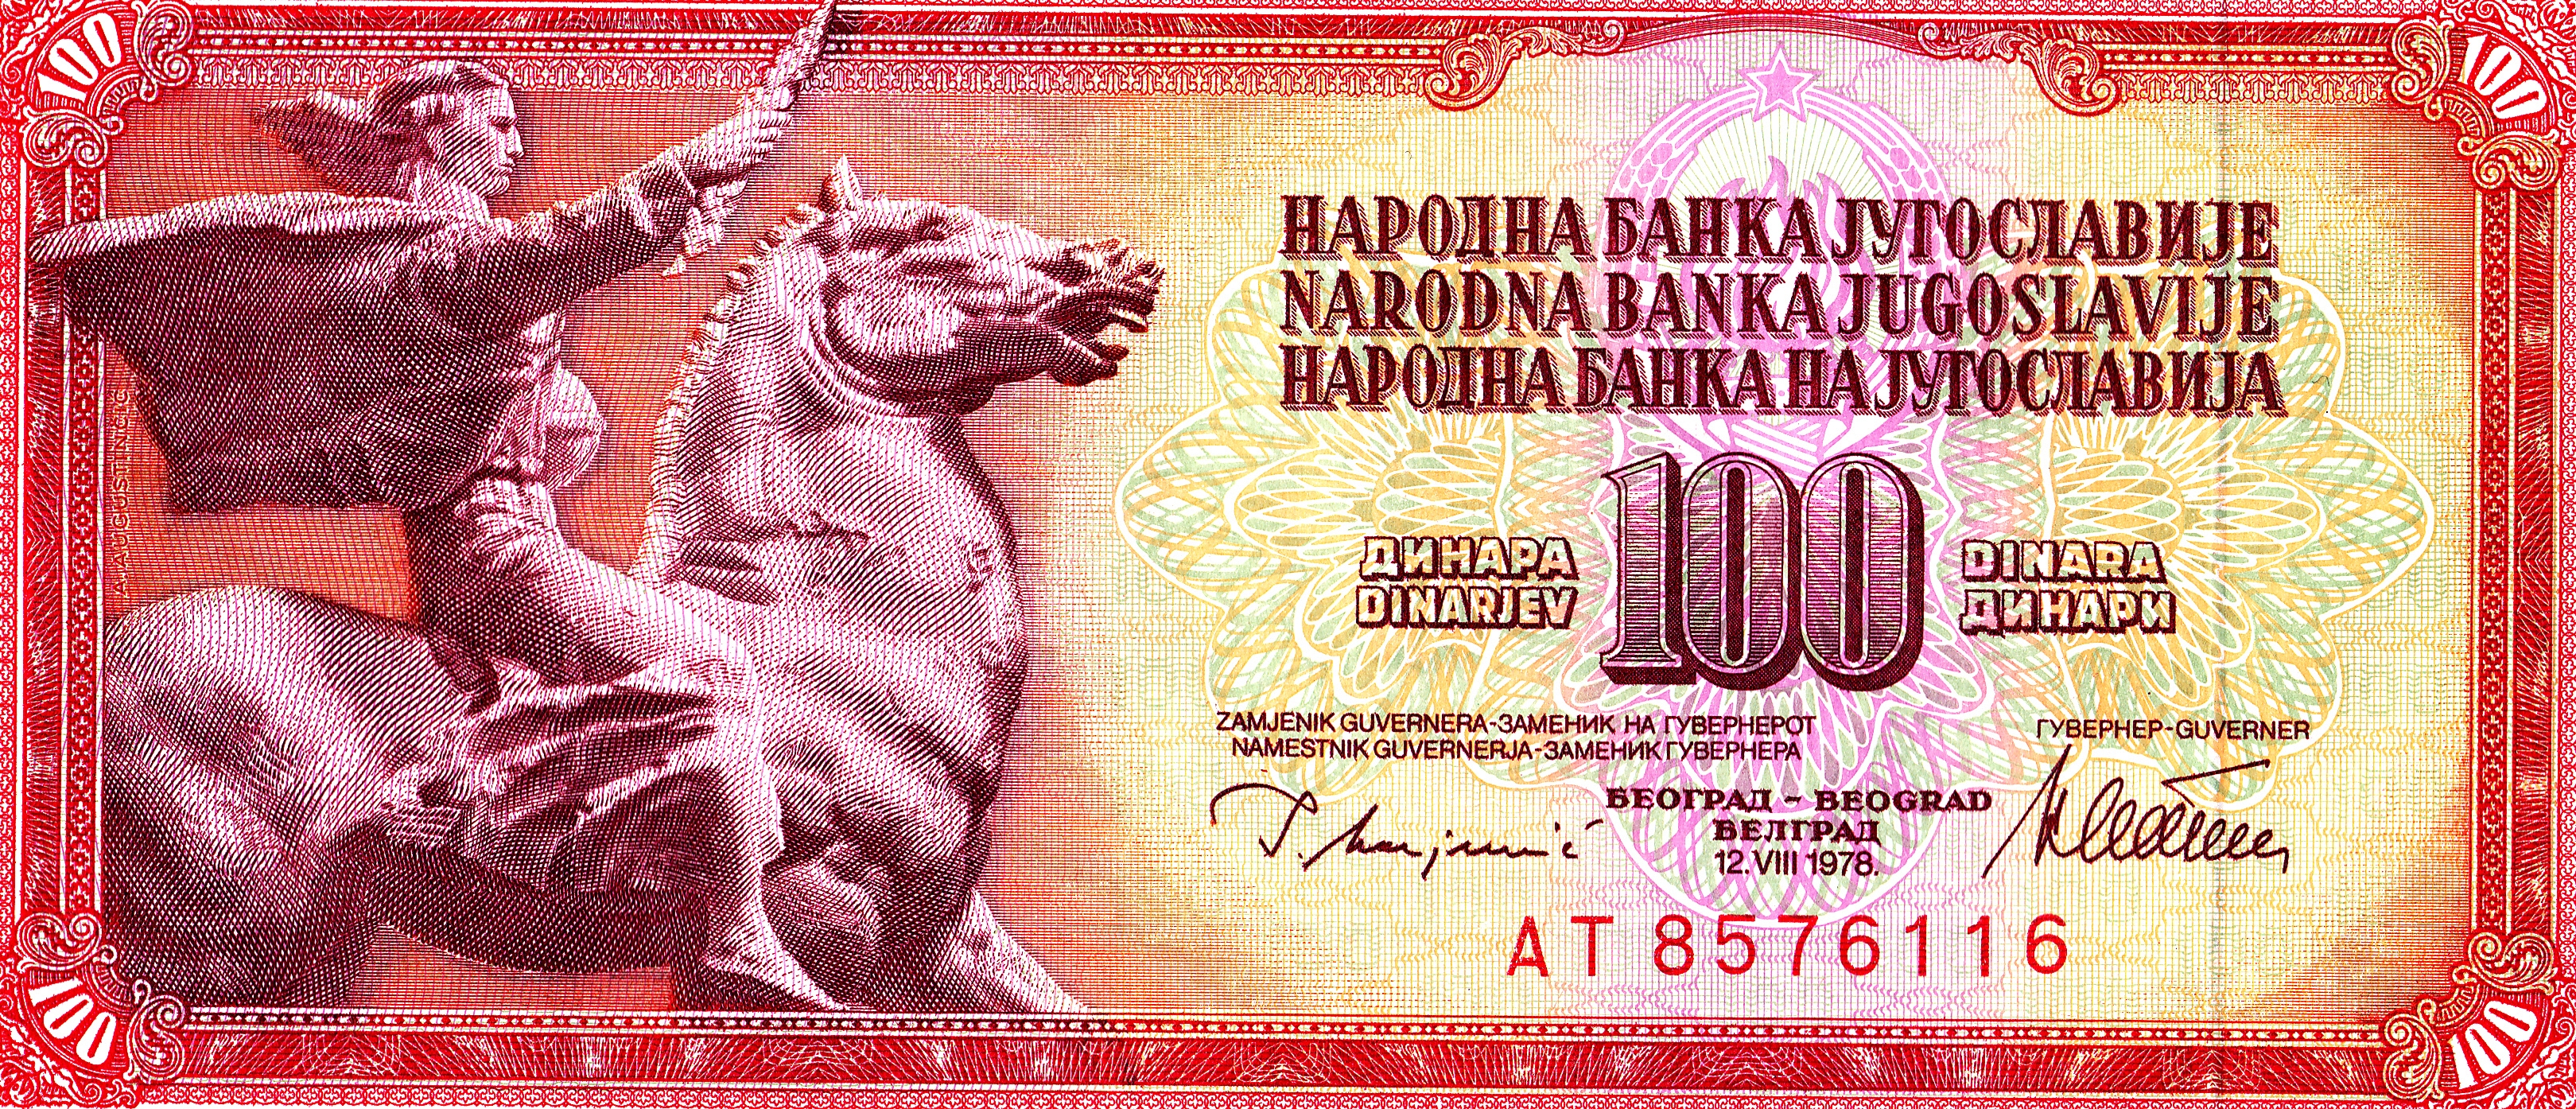 Yugoslav dinar HD Wallpaper